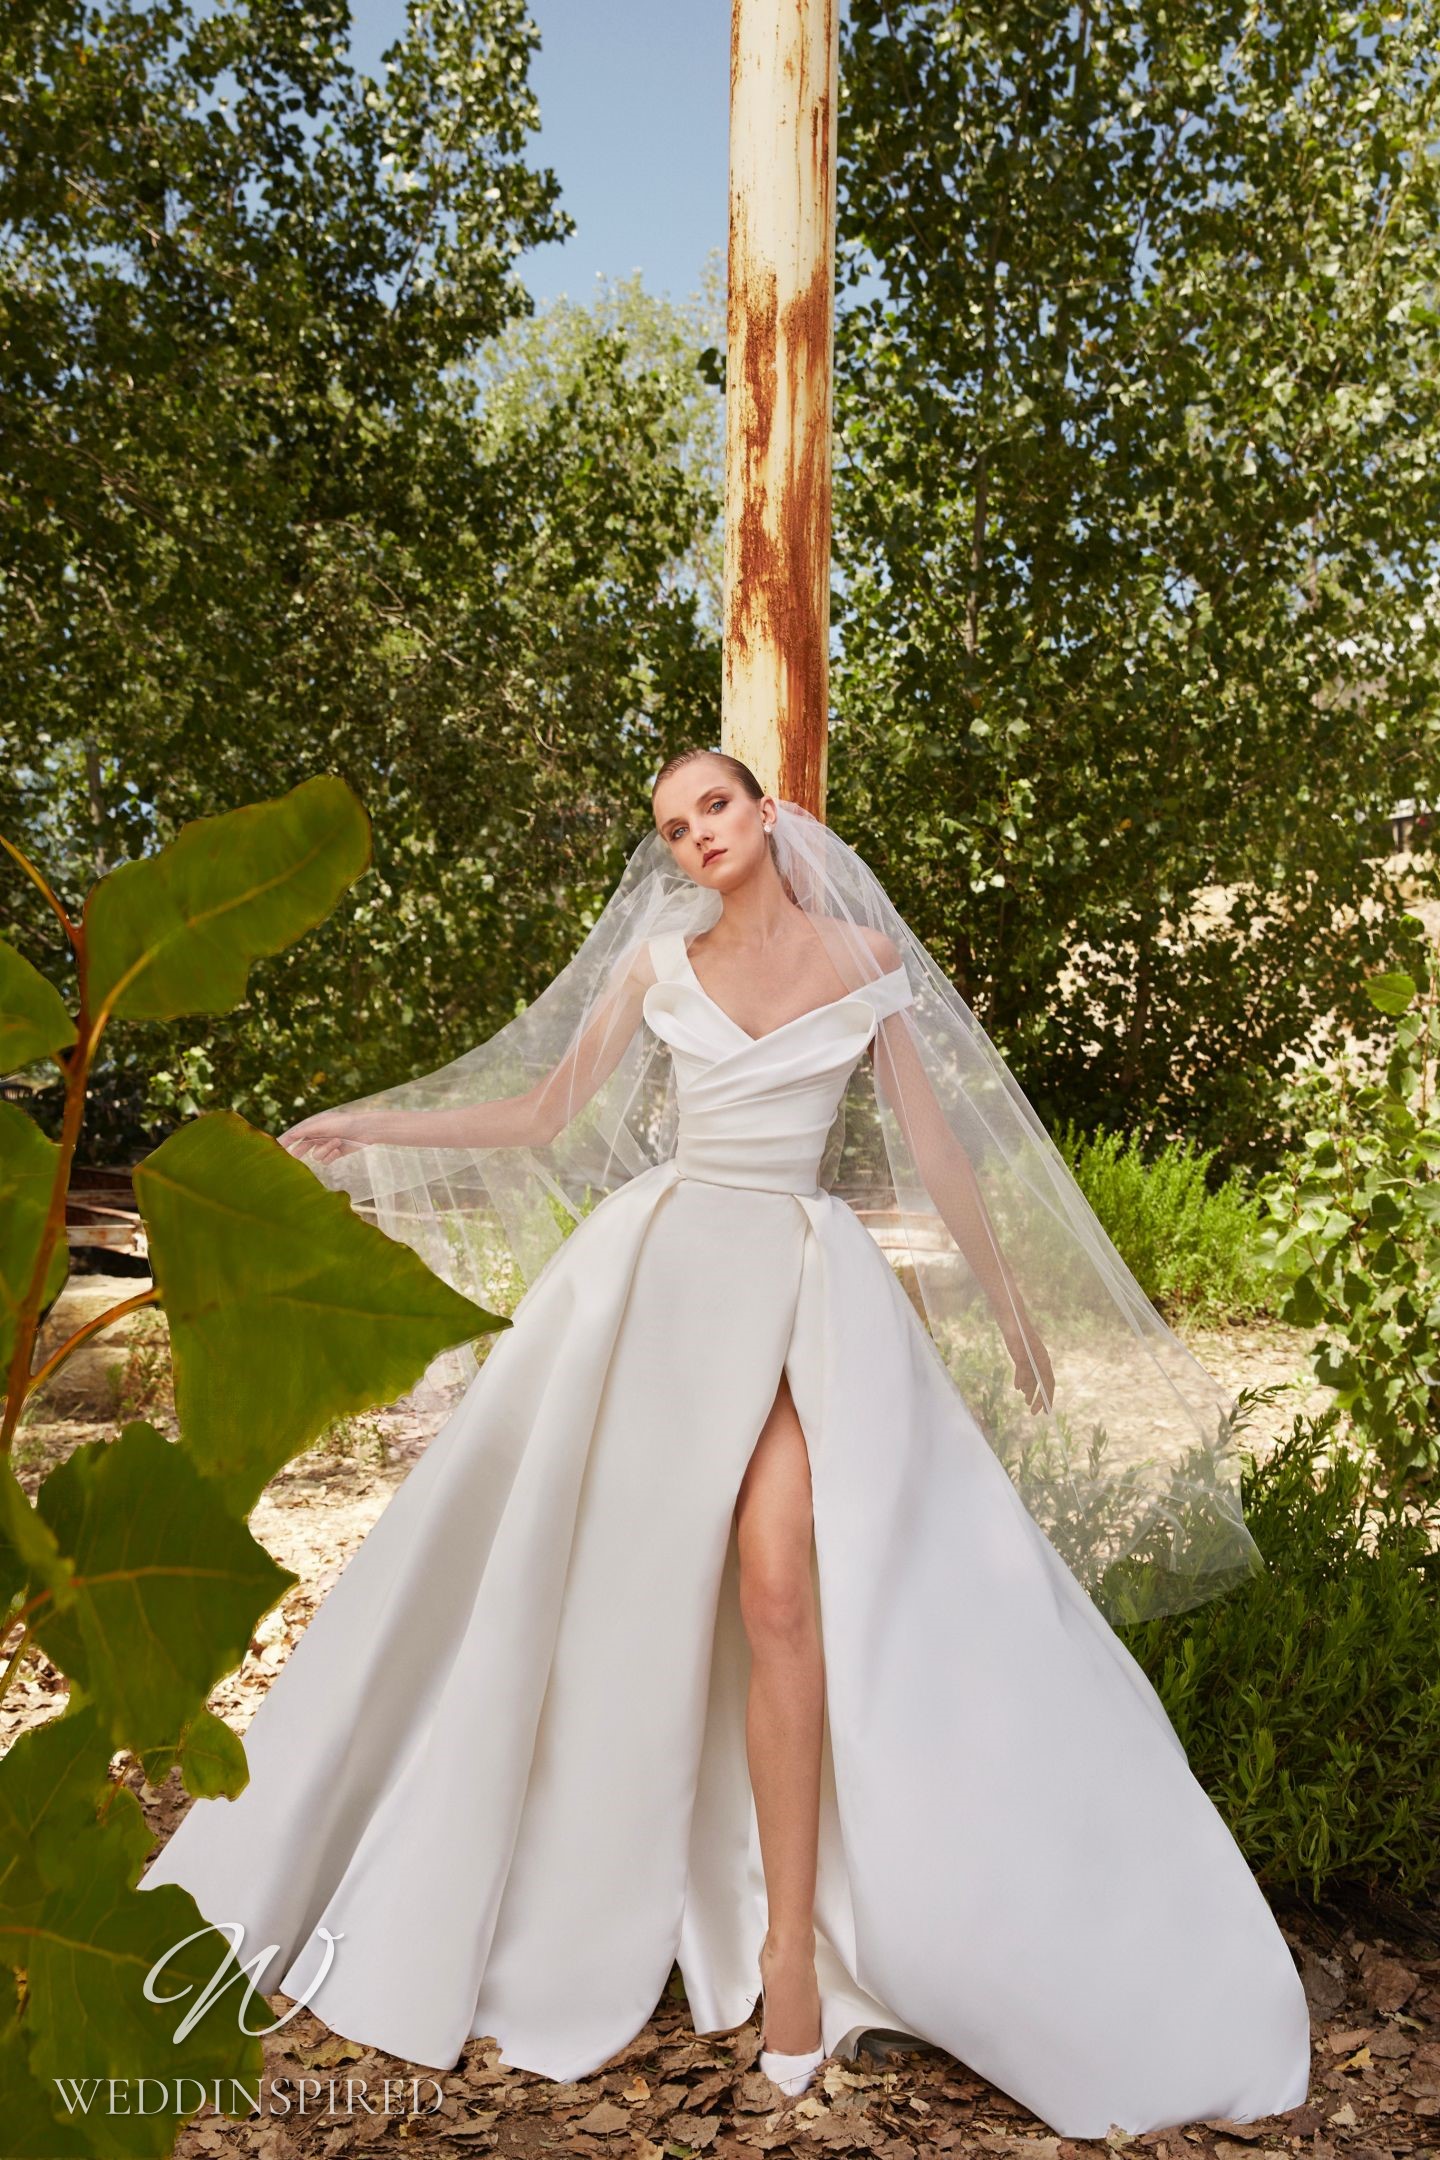 Elie Saab Wedding Dresses